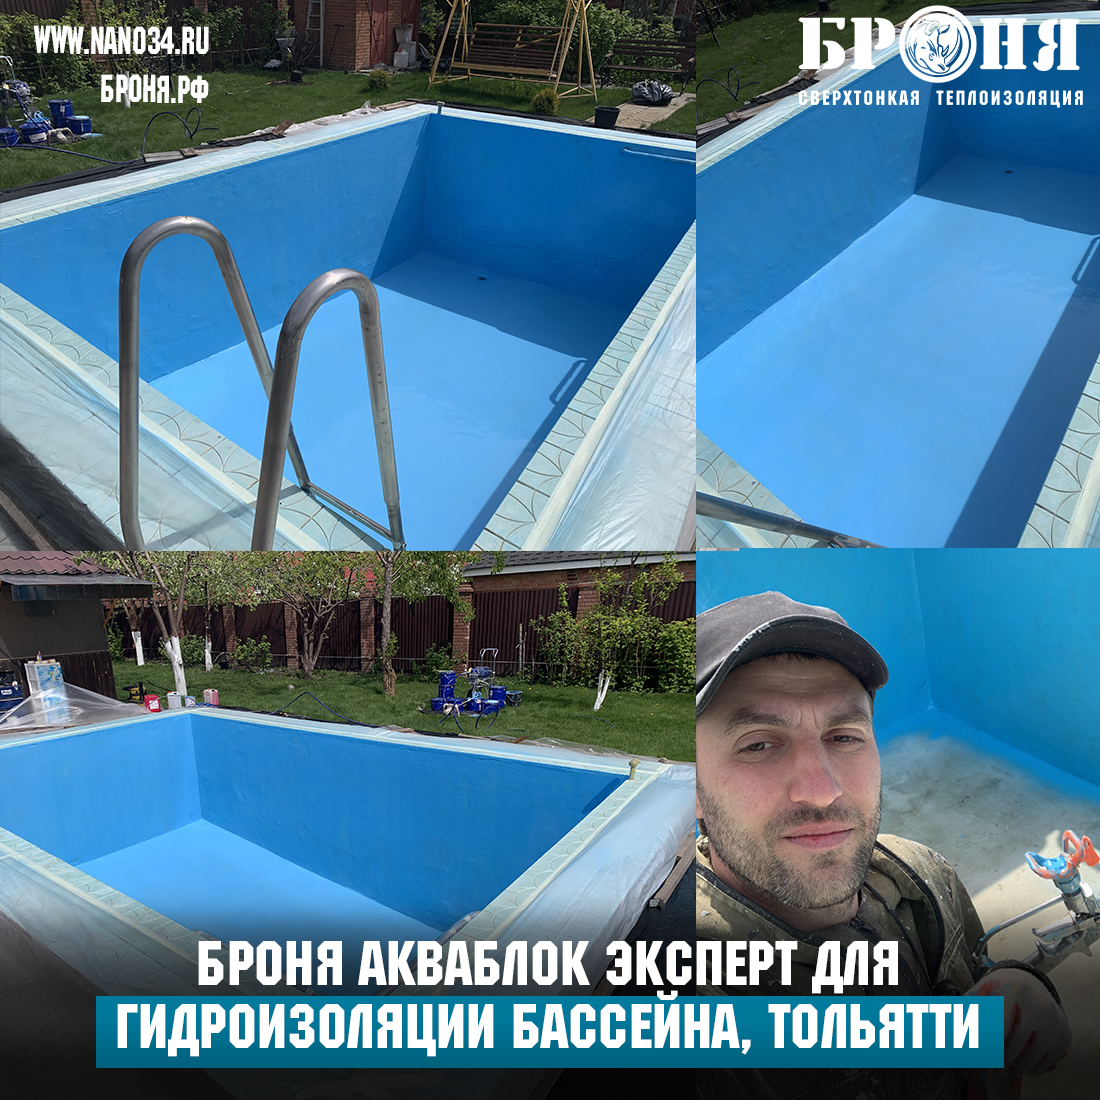 Применение Броня Акваблок Эксперт для гидроизоляции бассейна в с. Подстёпки г. Тольятти Самарской области!(фото)